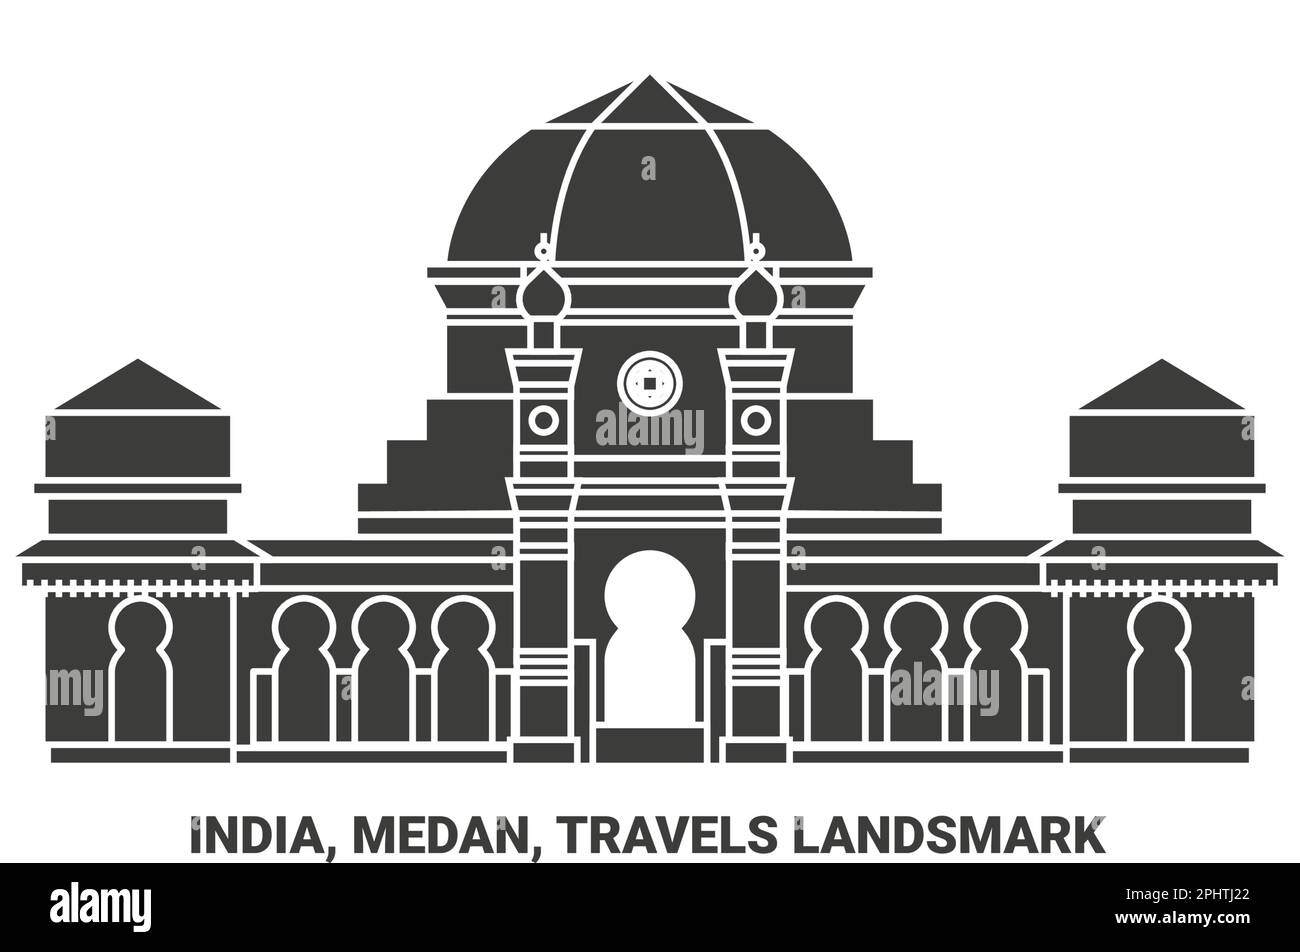 India, Medan, Travels Landsmark travel landmark vector illustration Stock Vector